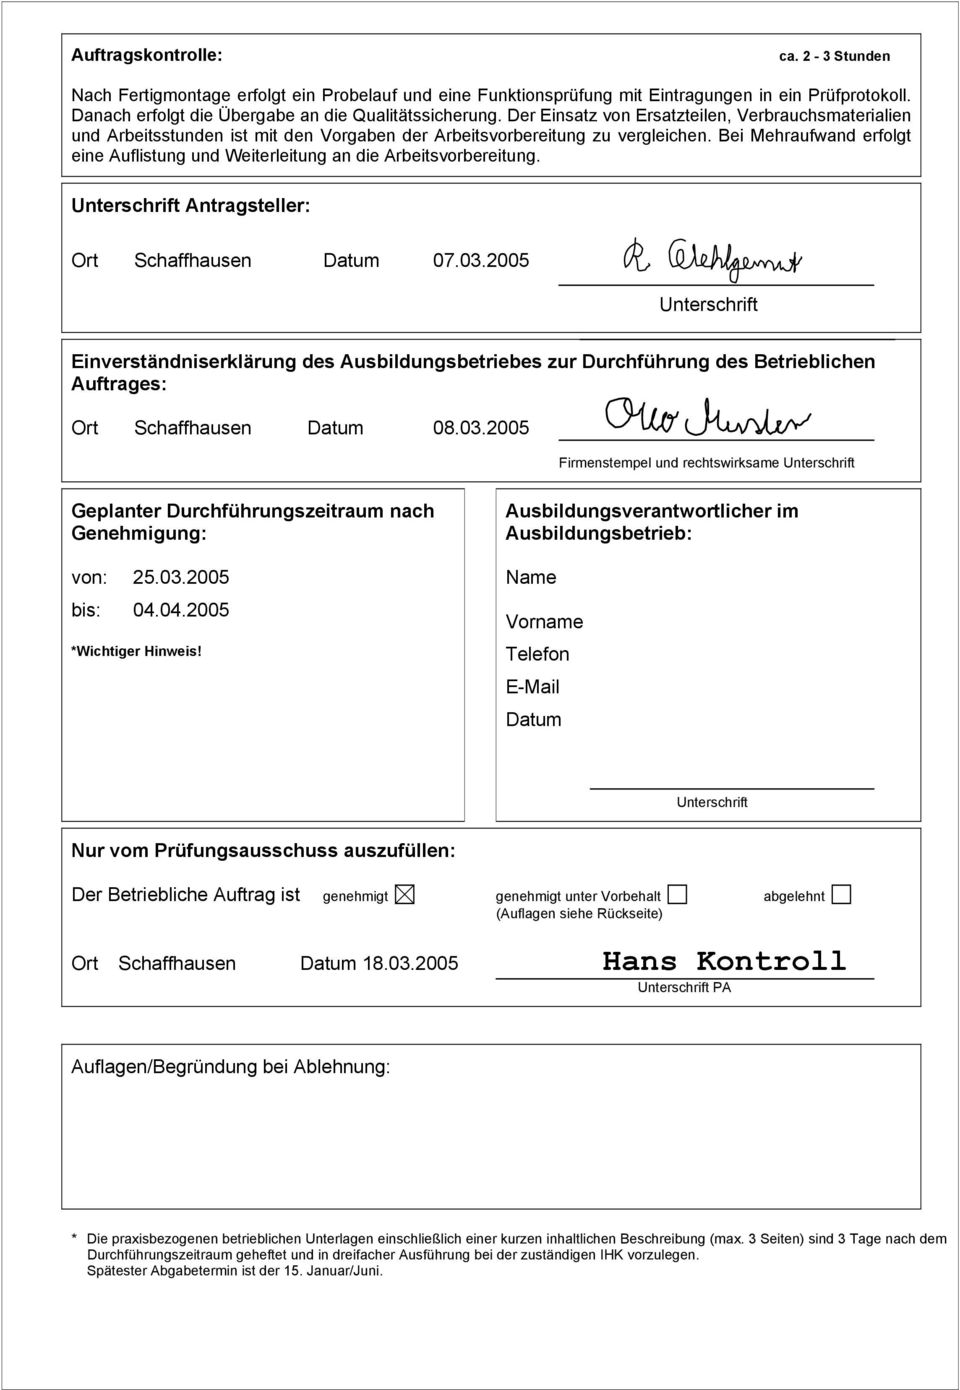 Bei Mehraufwand erfolgt eine Auflistung und Weiterleitung an die Arbeitsvorbereitung. Unterschrift Antragsteller: Ort Schaffhausen Datum 07.03.